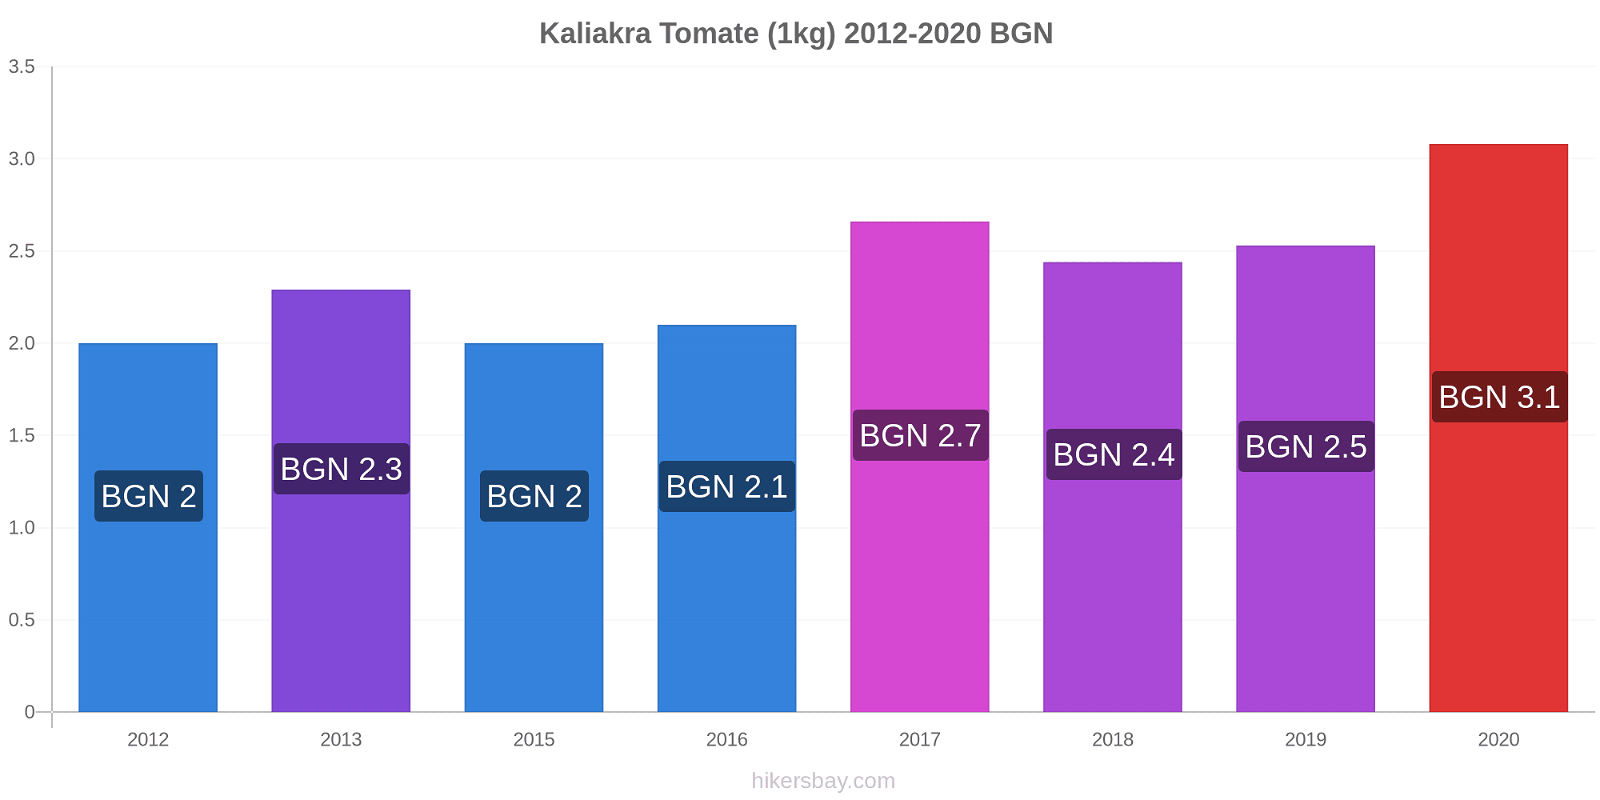 Kaliakra cambios de precios Tomate (1kg) hikersbay.com